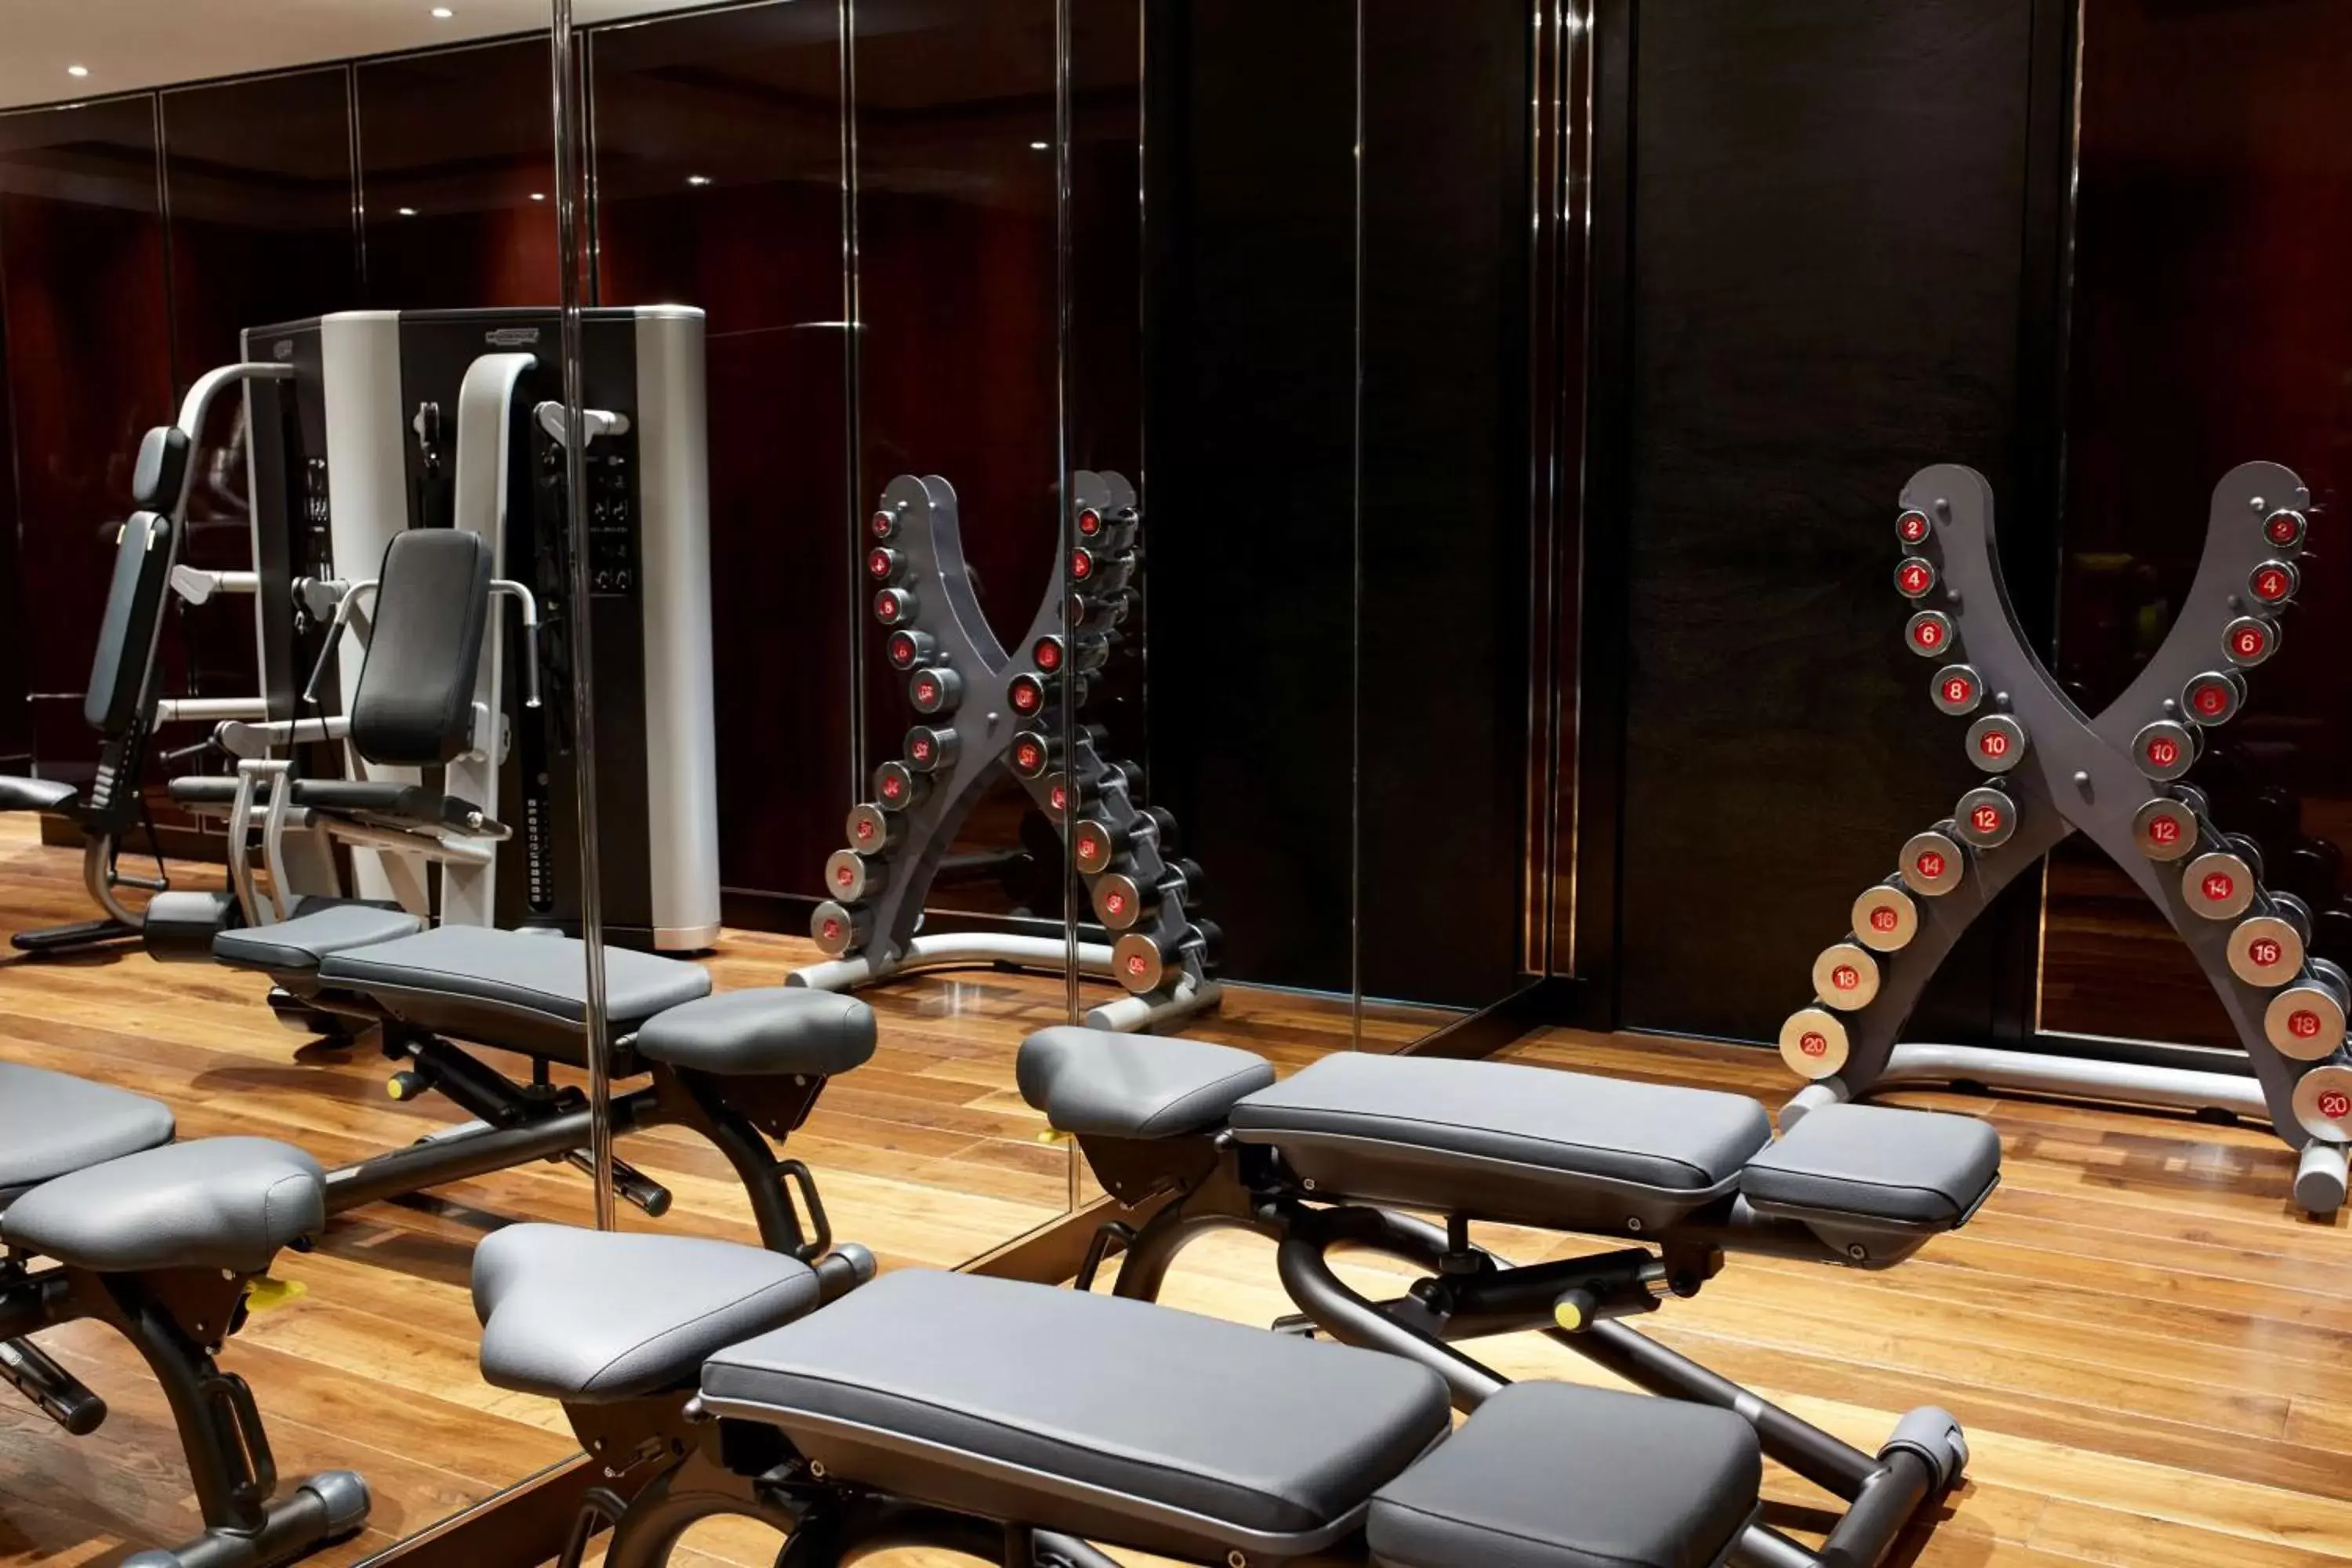 Fitness centre/facilities, Fitness Center/Facilities in Hyatt Regency London Albert Embankment